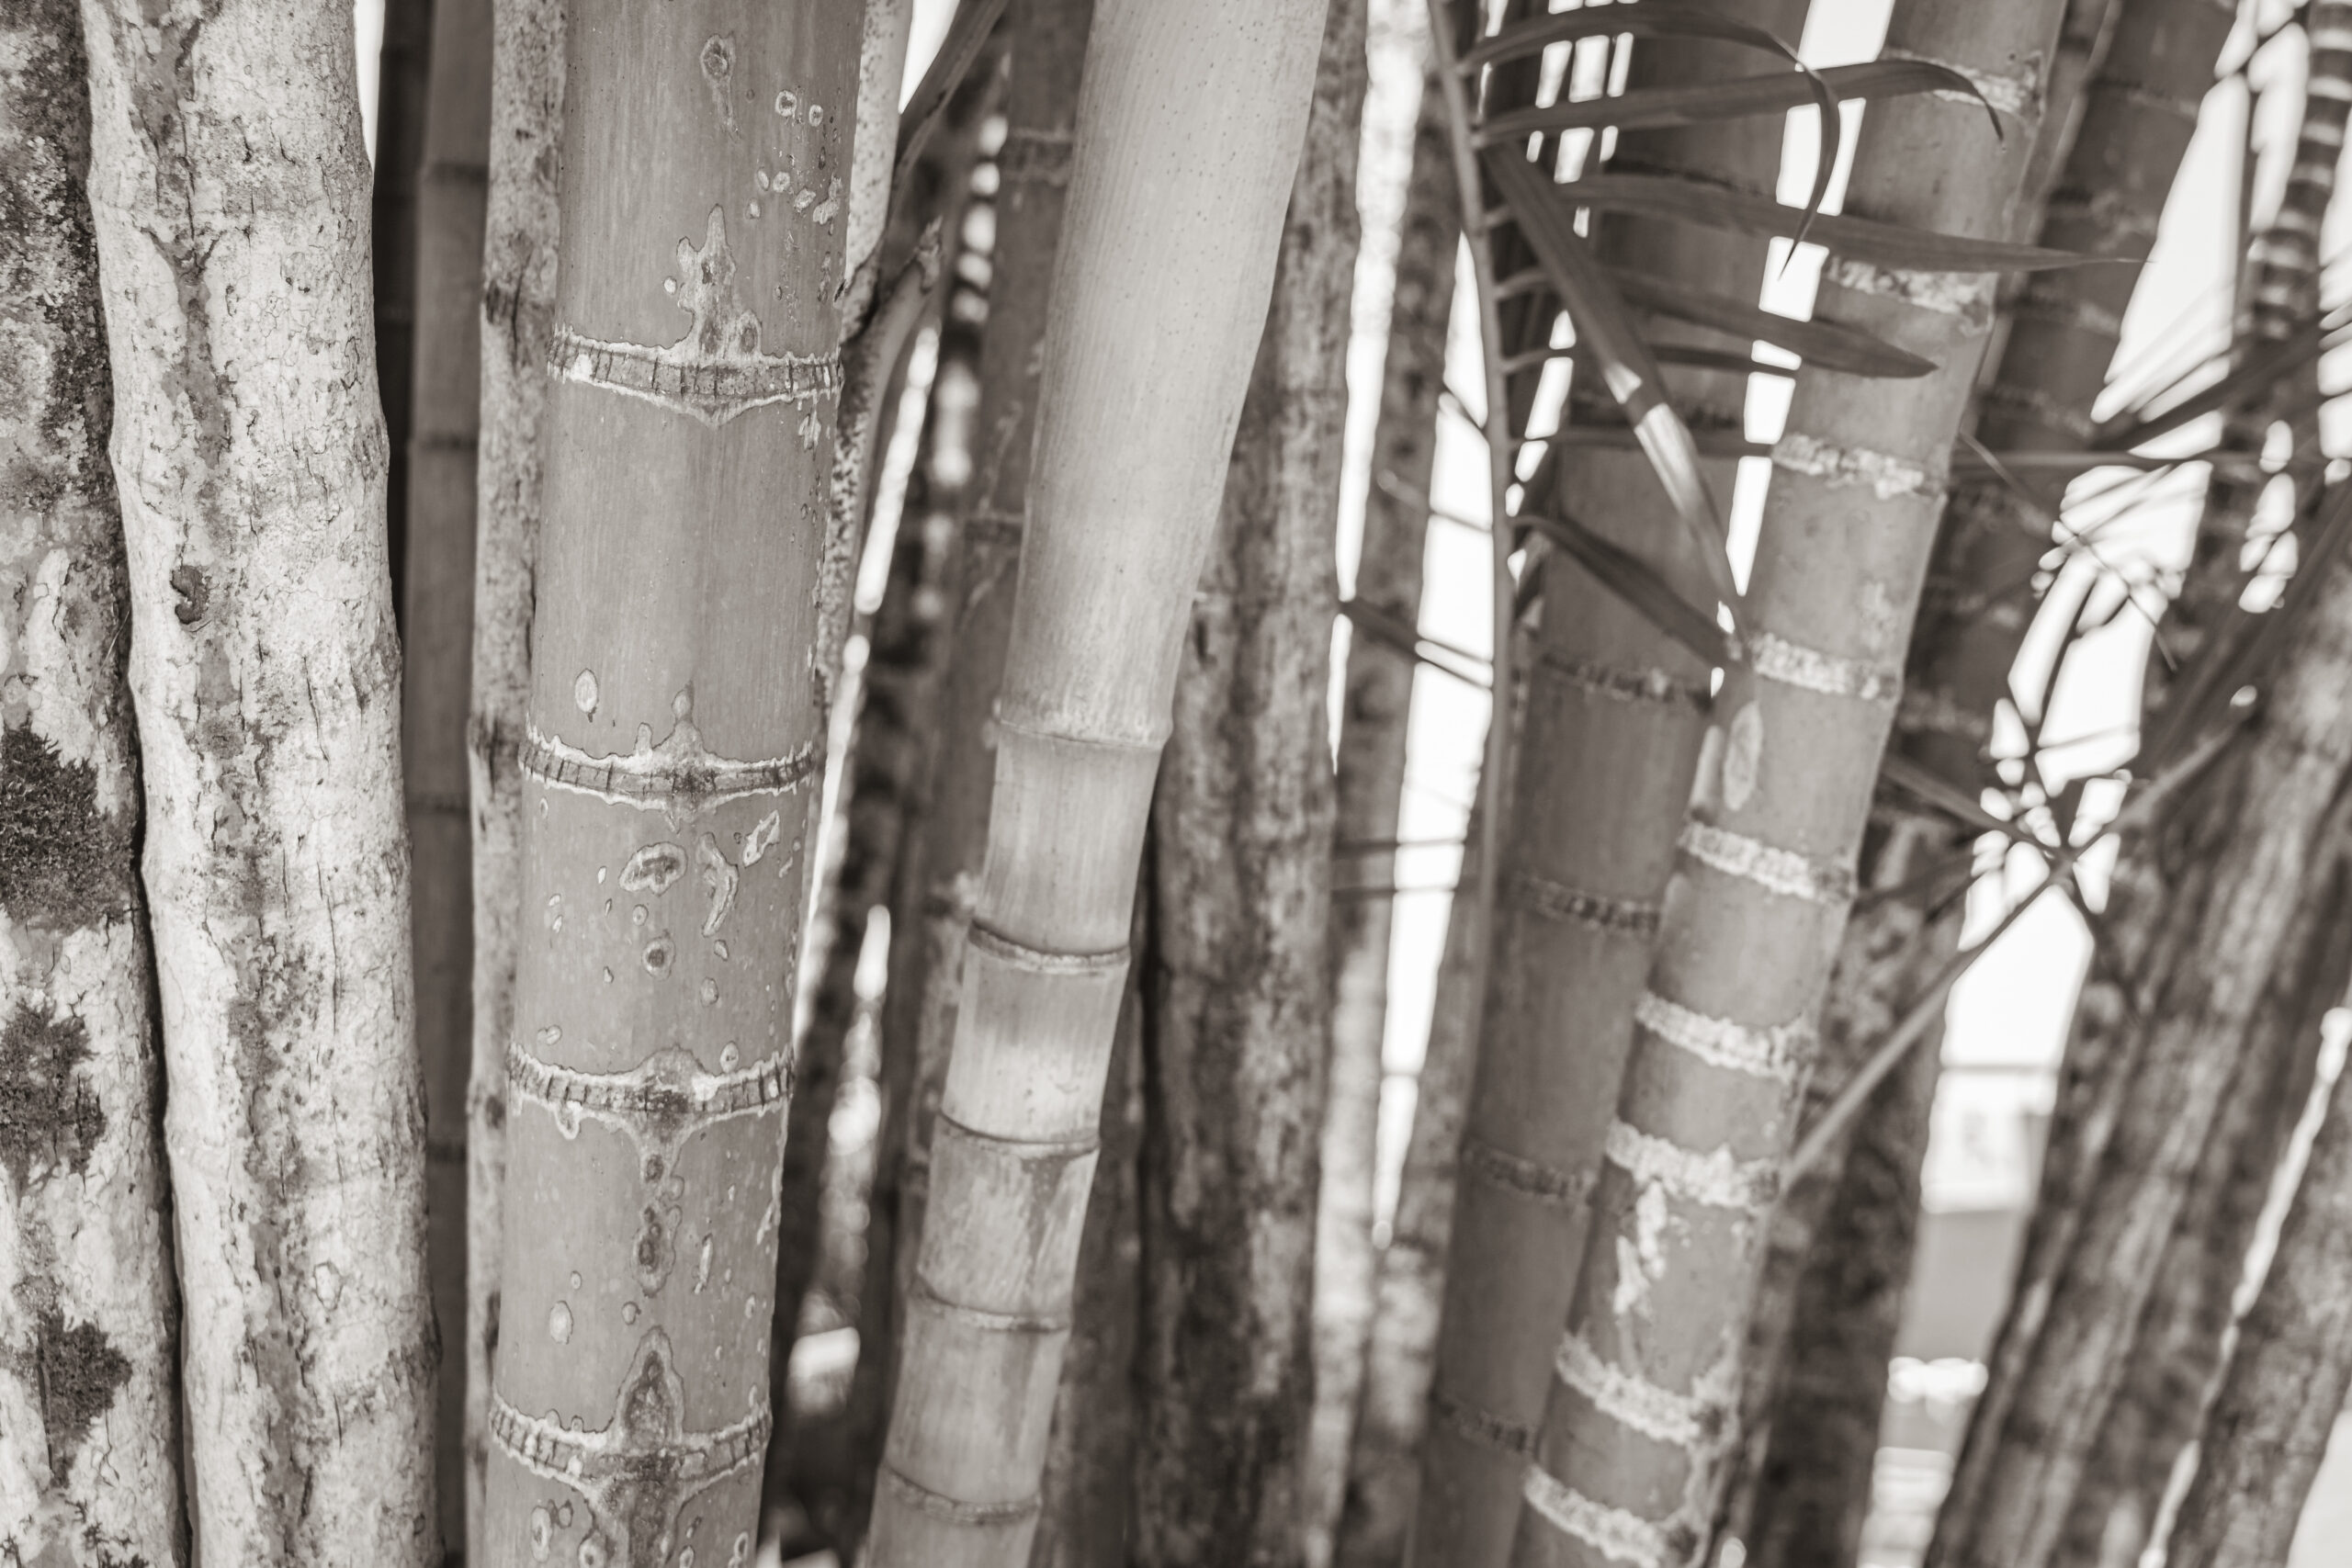 Na obrazku ukazuje się malowniczy widok bambusa w zimowej scenerii, gdzie jego zielone liście kontrastują z białym puchem śniegu. Pomimo surowych warunków, bambus zachowuje swoją elegancję i odporność, tworząc harmonijną kompozycję zimowego krajobrazu. Ten obrazek przypomina nam, że natura potrafi przetrwać nawet w najtrudniejszych warunkach, dając nam inspirację i nadzieję na nowy początek